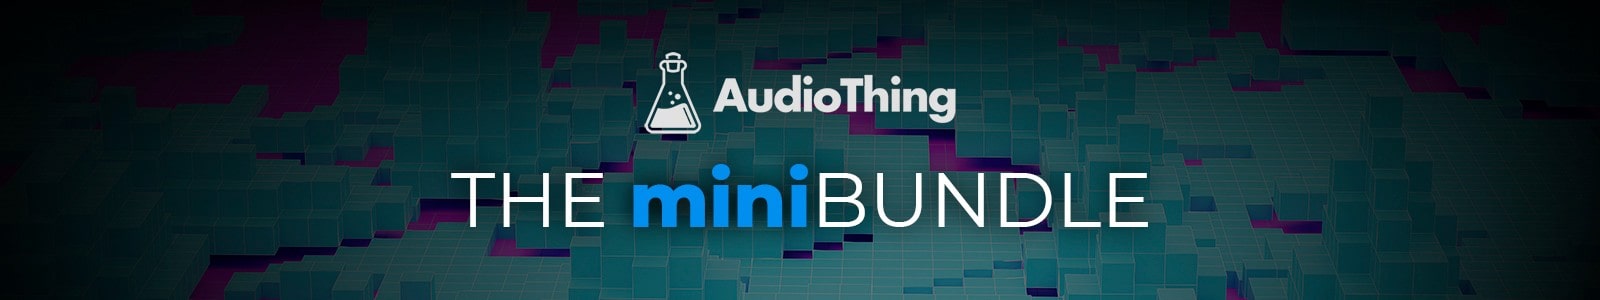 the audiothing minibundle